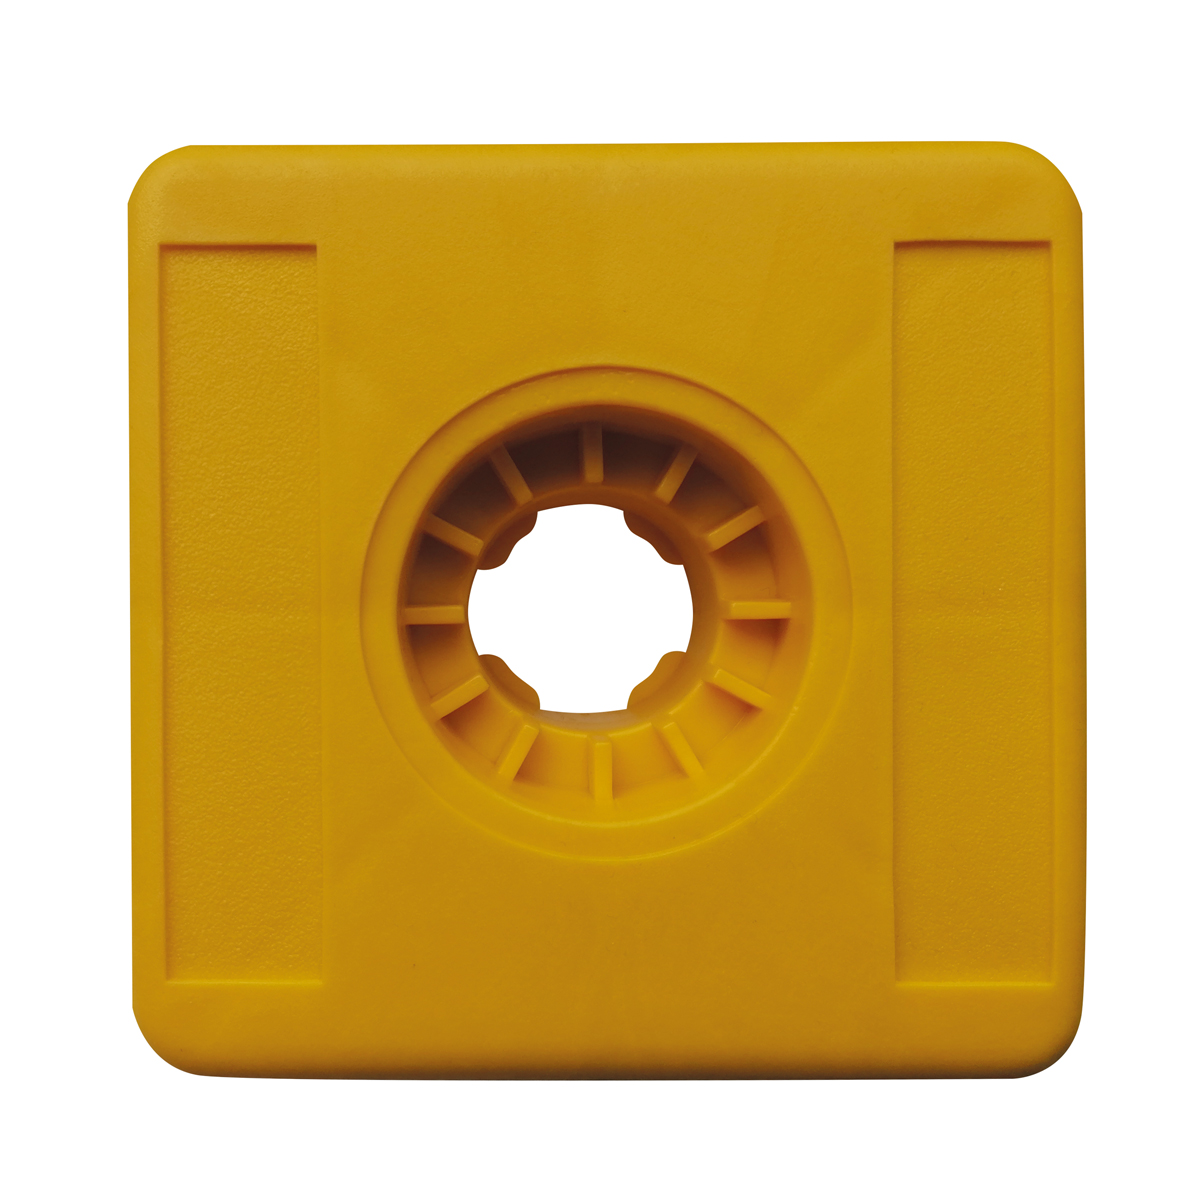 Kunststoffmarken Vario Light, gelb Kopfgröße 100x100x100 mm ohne Aufschrift